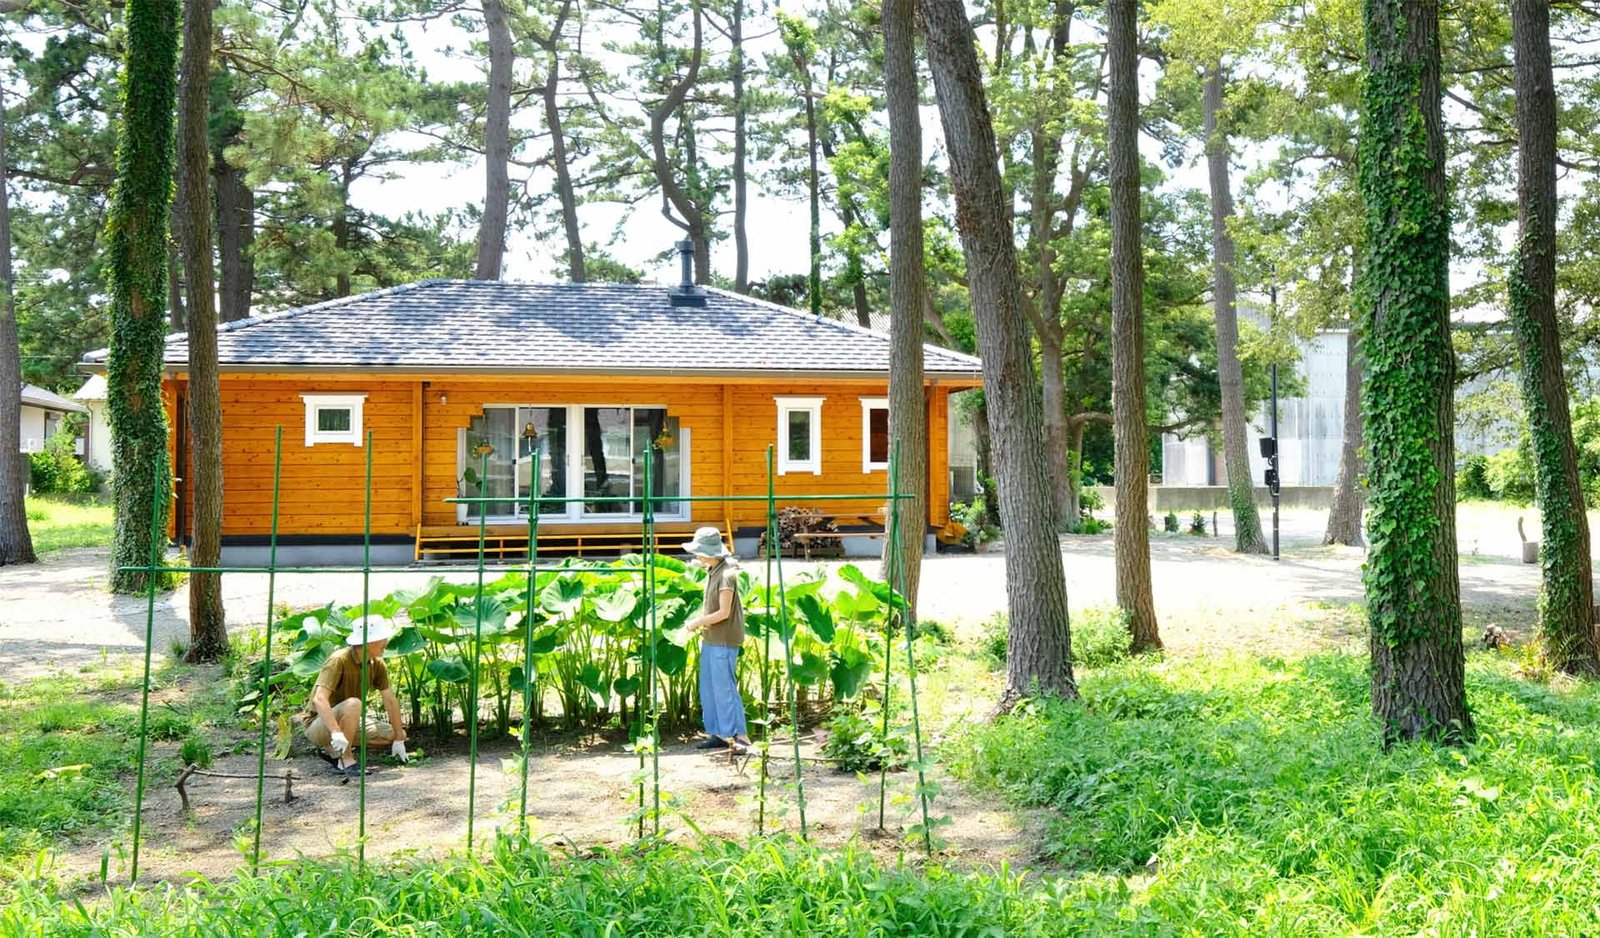 บ้านไม้สไตล์ญี่ปุ่น เหมาะกับวัยเกษียณ เพลิดเพลินกับการใช้ชีวิตในชนบท